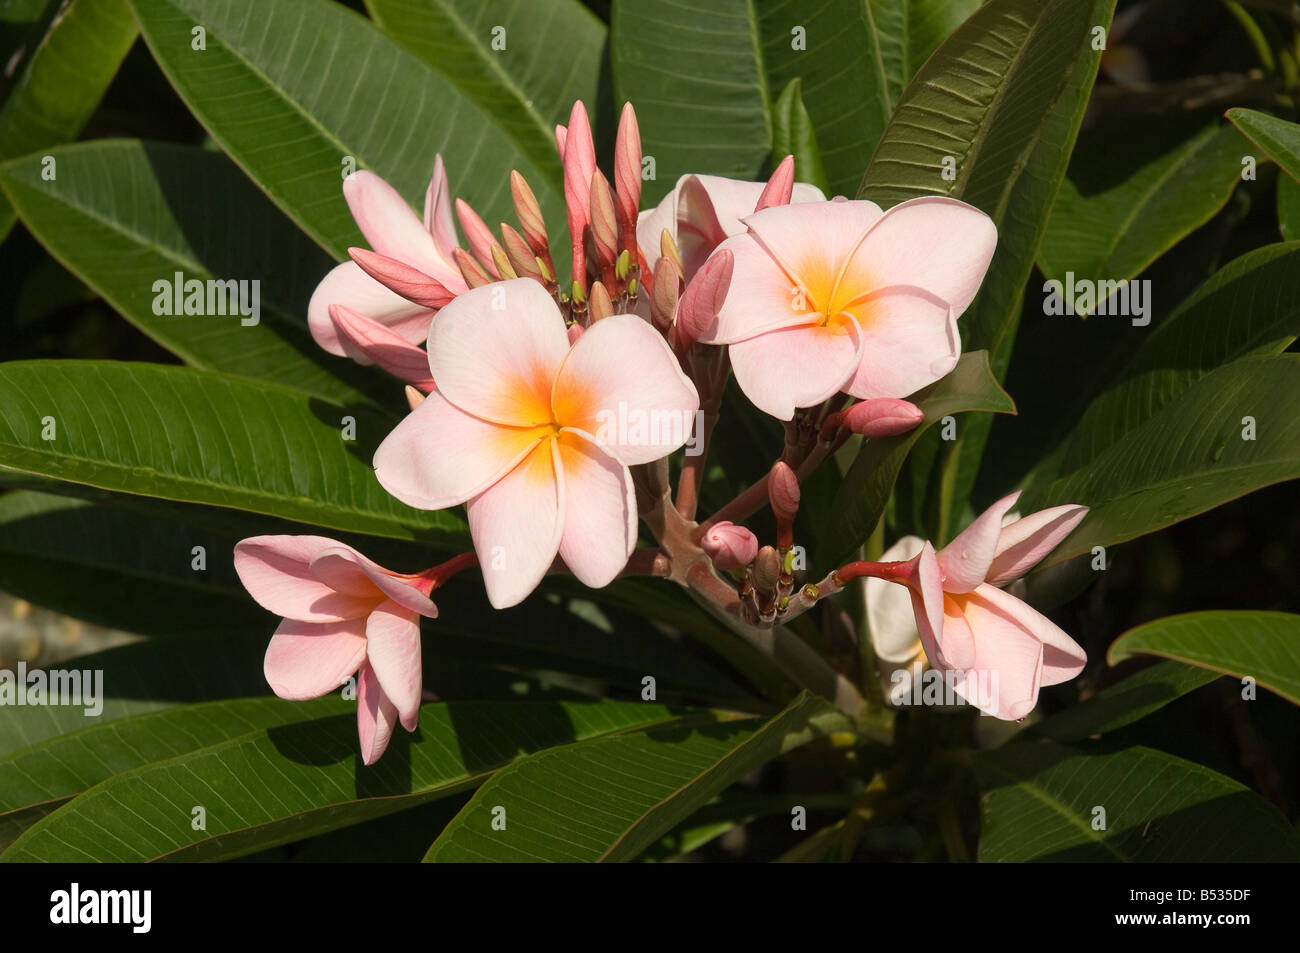 Rosa plumeria rubra apocinaceas fiori fiore frangipani pianta arbusto primo piano Foto Stock